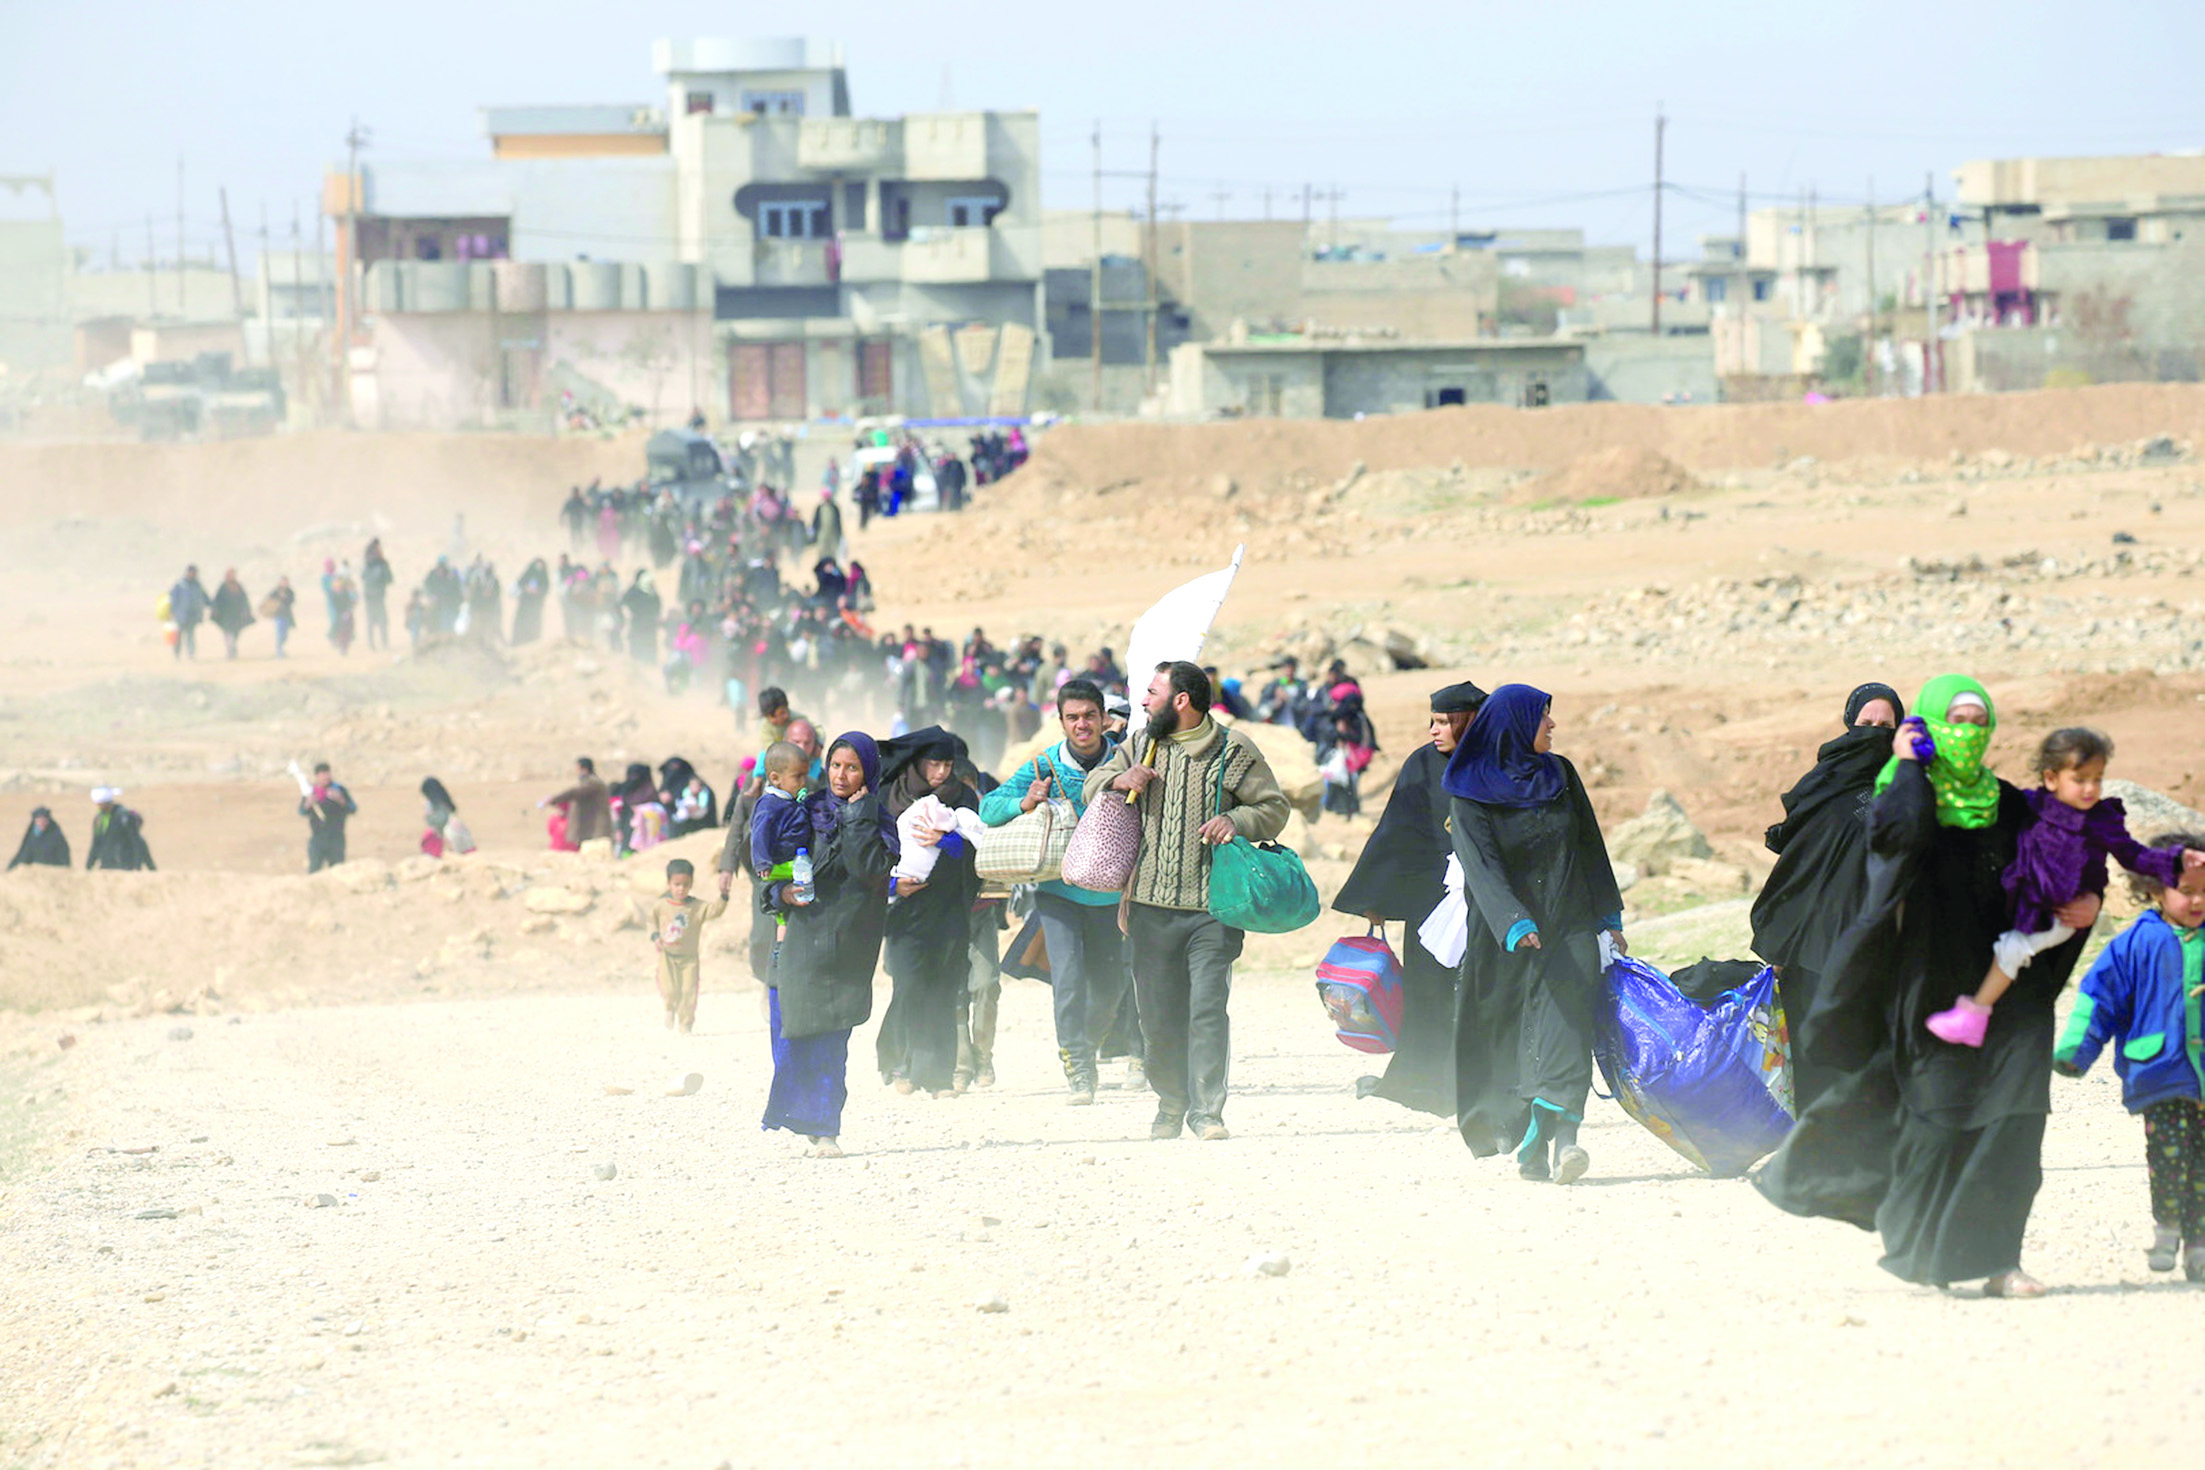 بعد خمسة أشهر من معاناة النزوح والحصار
مدنيو الموصل.. متى تنتهي مأساتهم؟